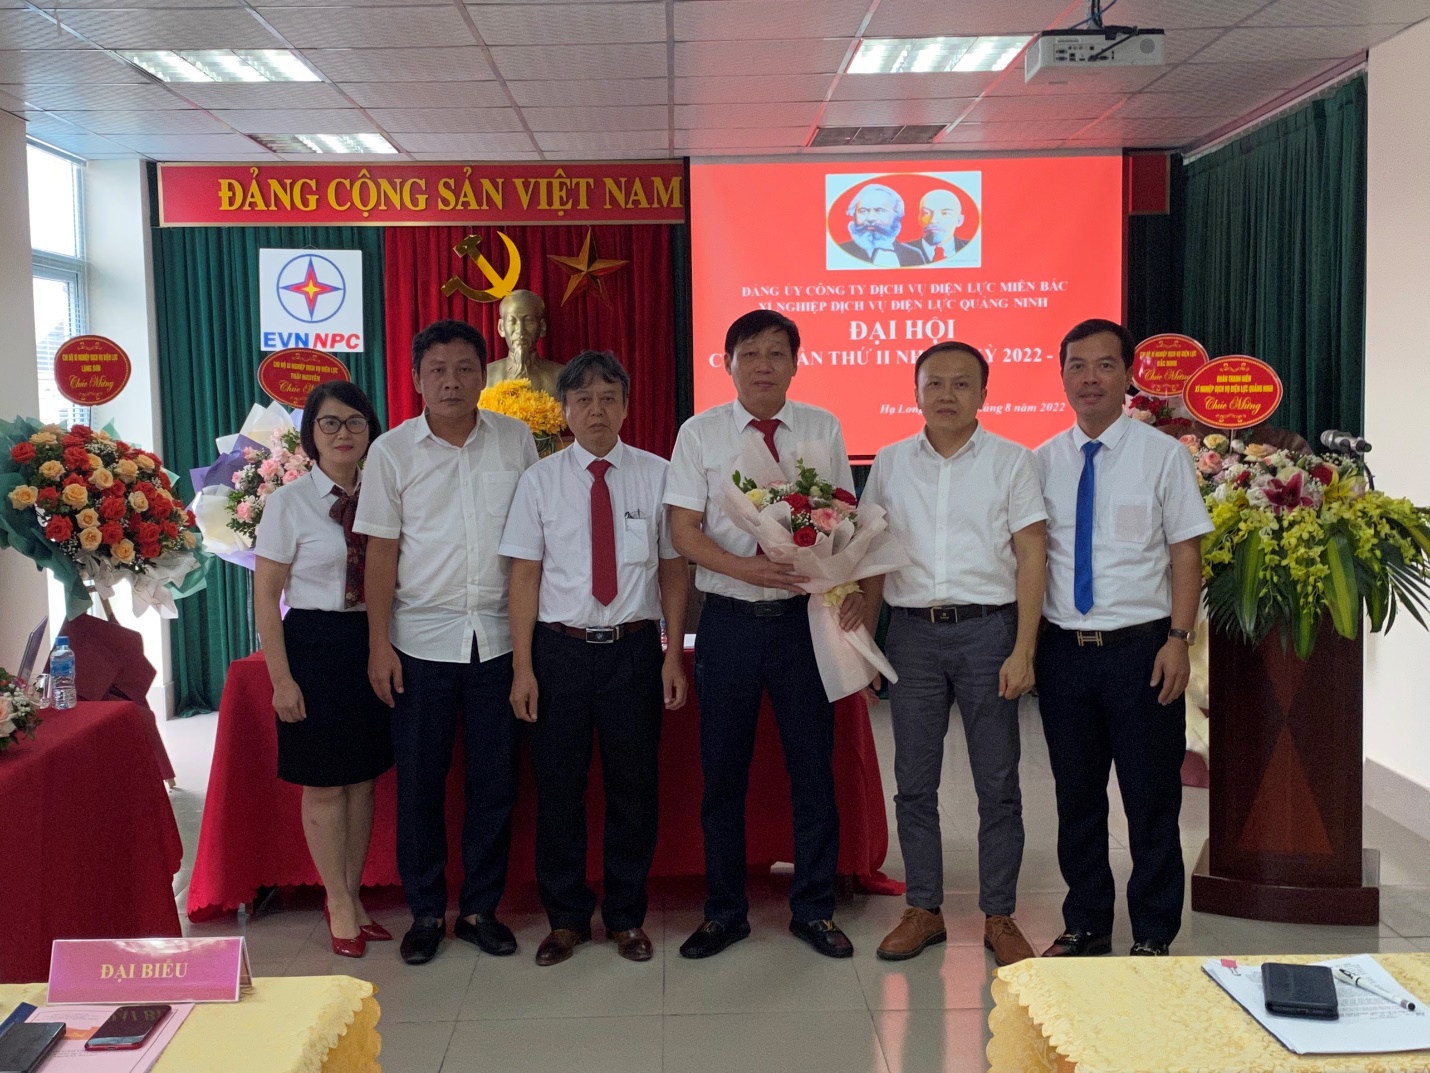 Xí nghiệp Dịch vụ Điện lực Quảng Ninh tổ chức Đại hội chi bộ lần thứ II nhiệm kỳ 2022-2025.